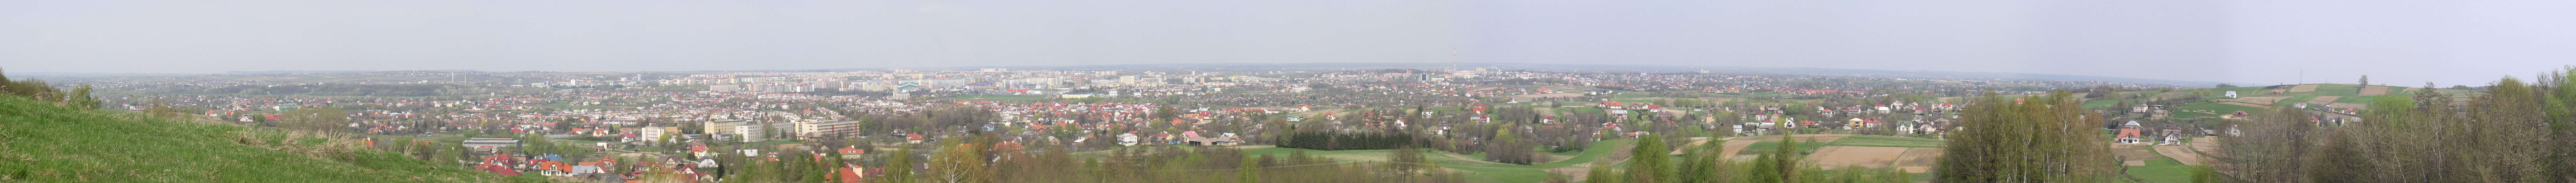 Rzeszow-panorama2.JPG